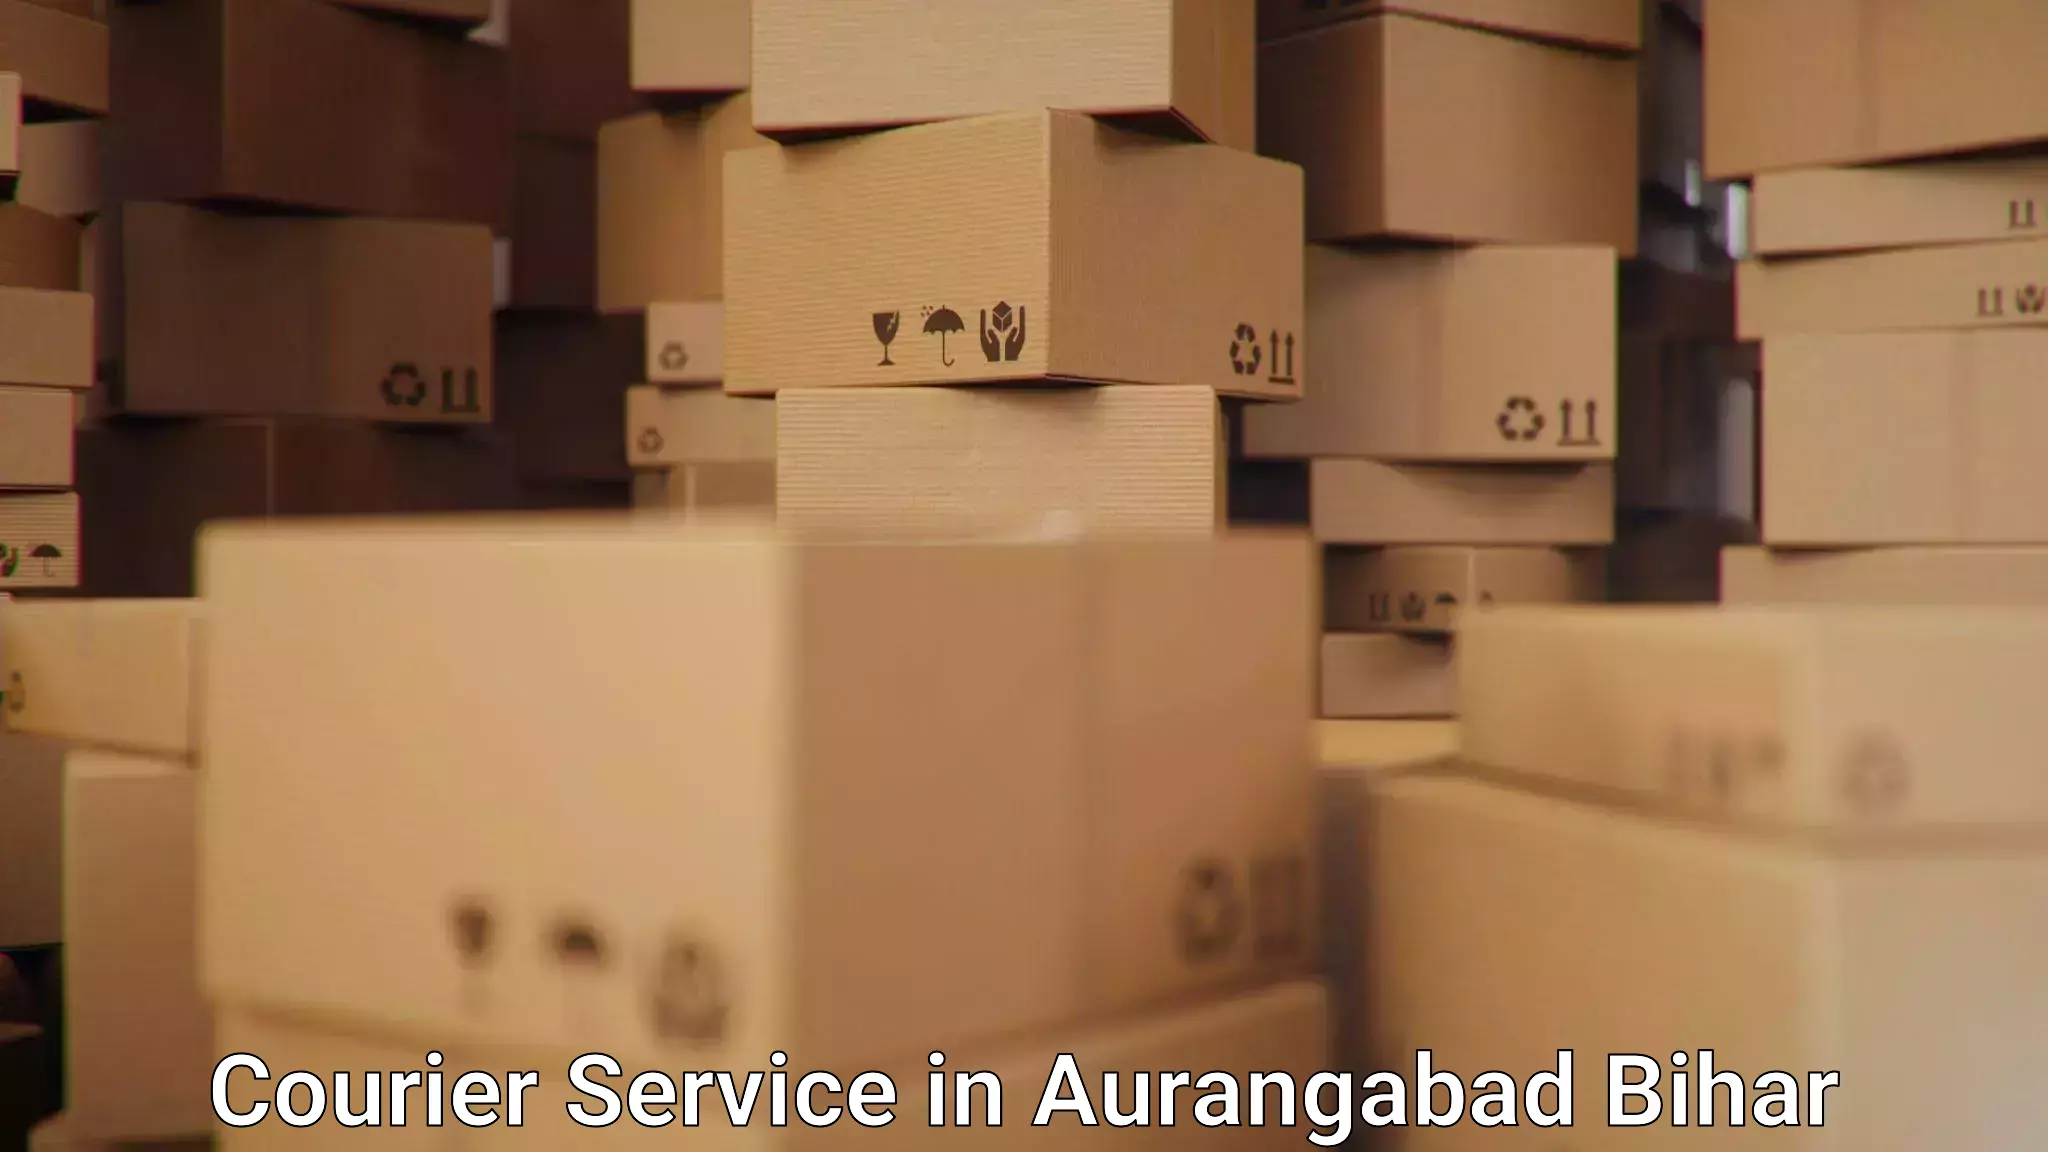 Express delivery solutions in Aurangabad Bihar